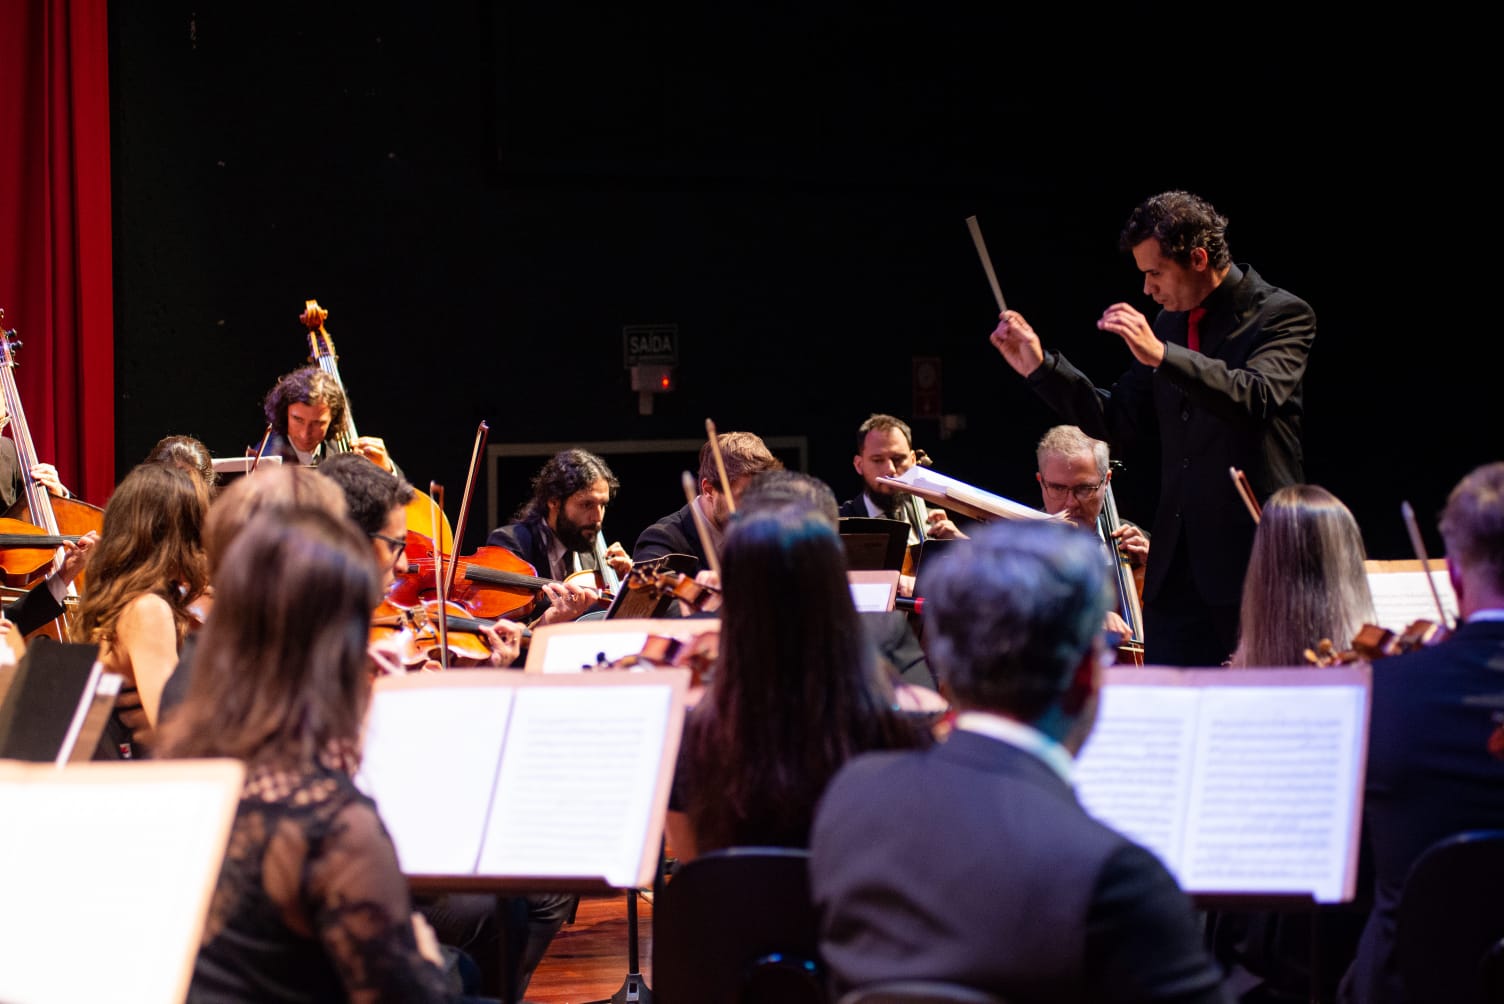 Sinfônica de Indaiatuba interpreta composição de Mozart em concerto  gratuito nesta sexta-feira, Campinas e Região